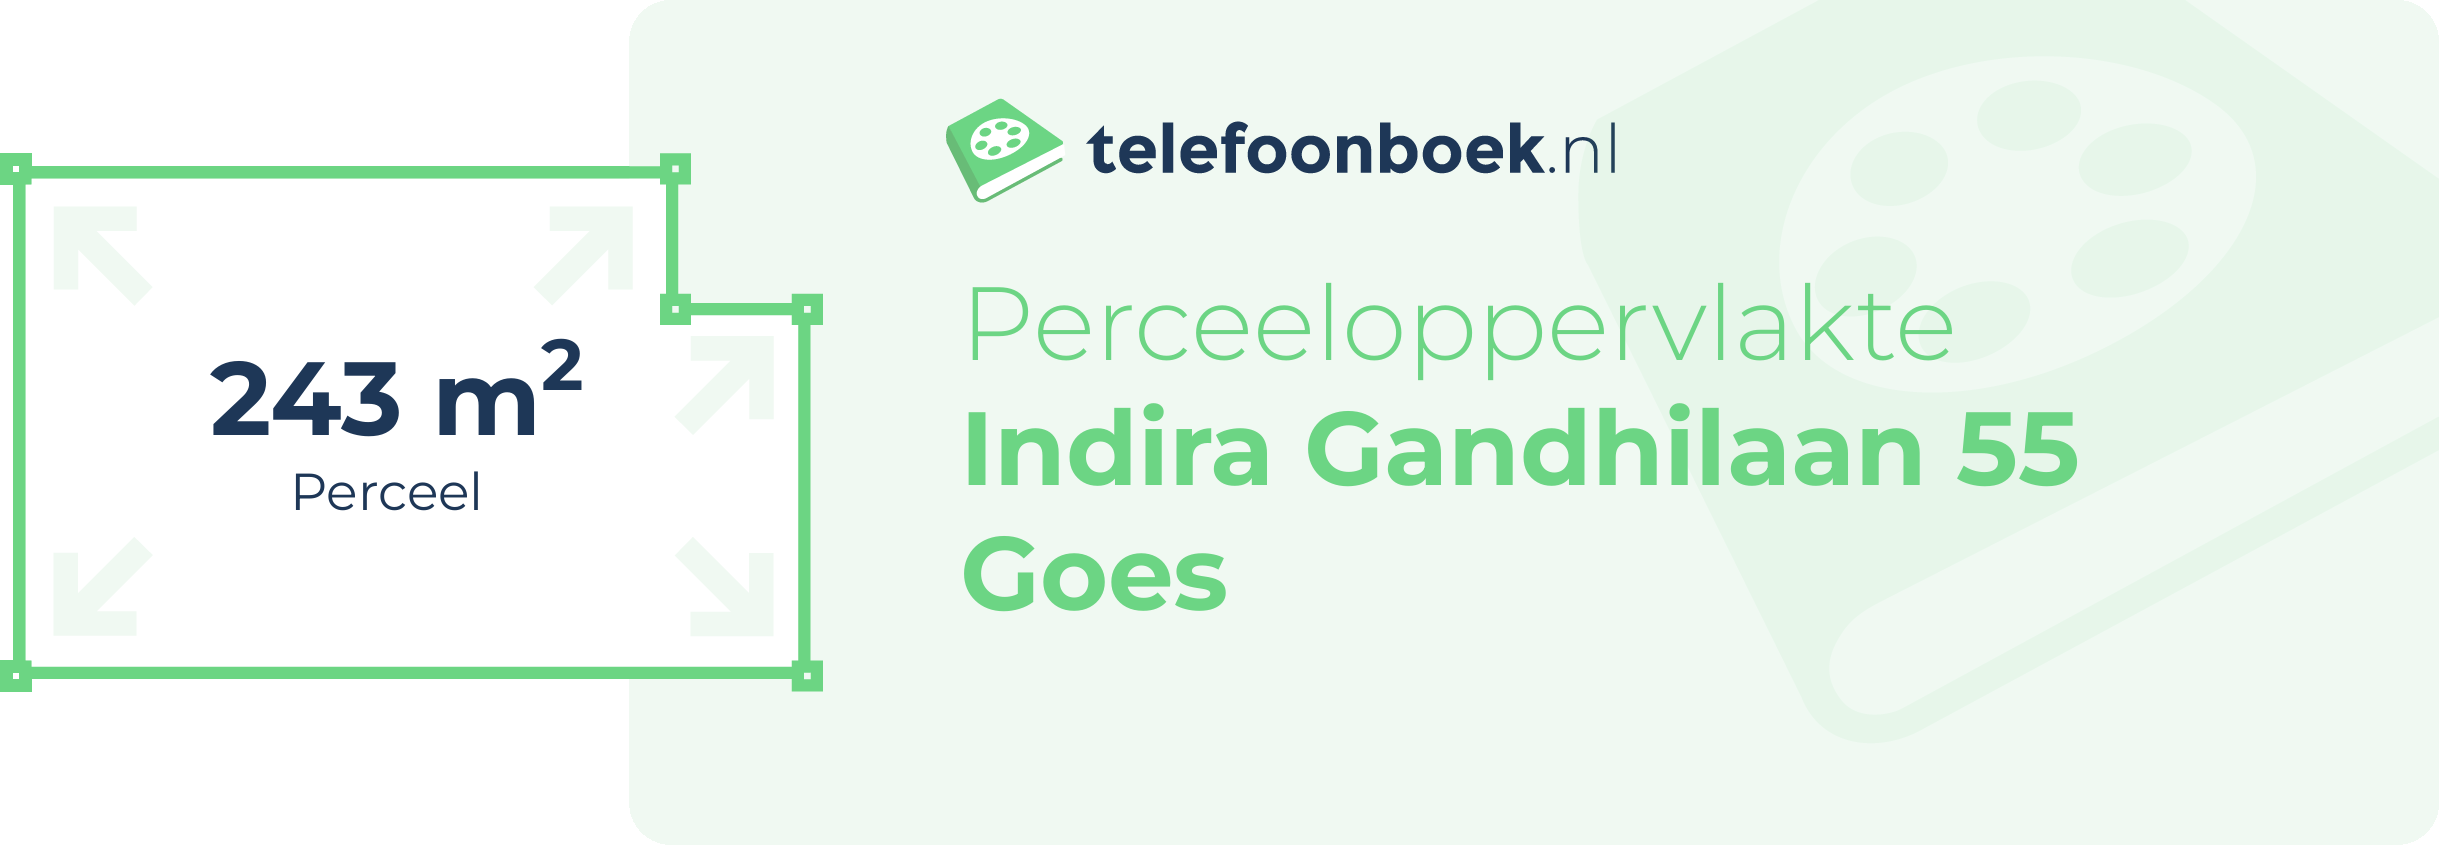 Perceeloppervlakte Indira Gandhilaan 55 Goes